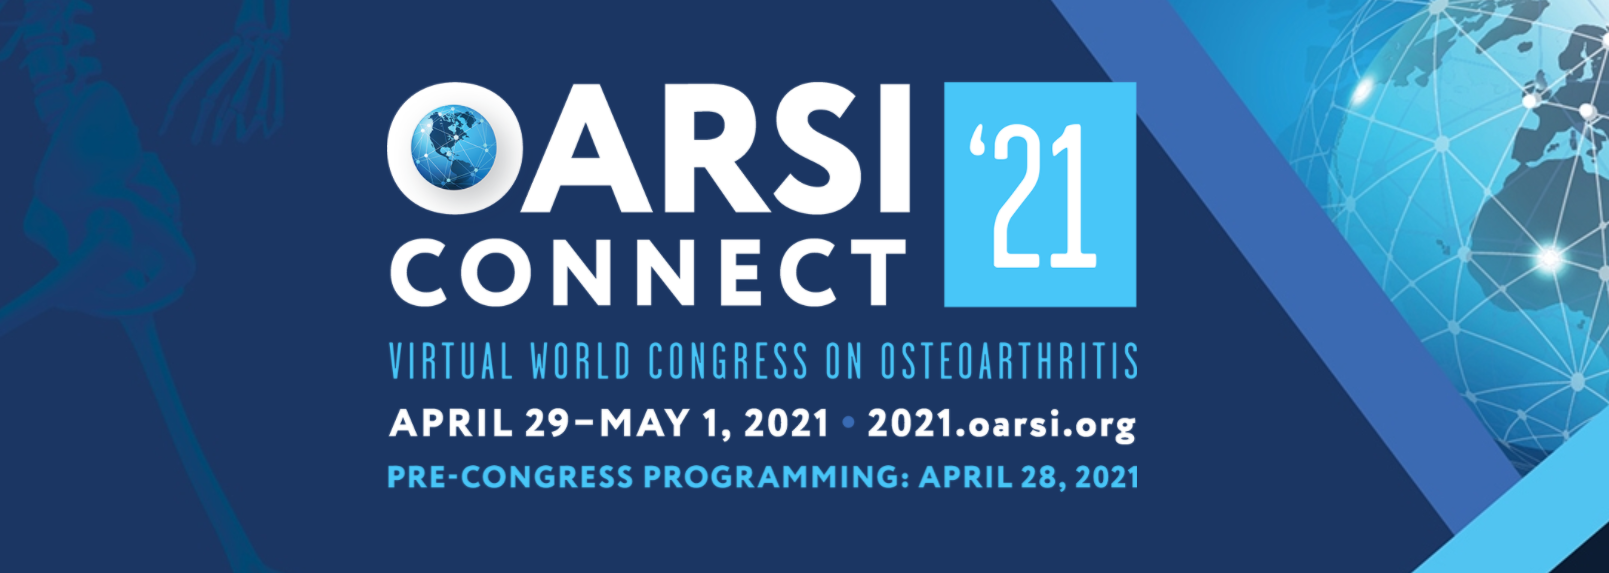 Virtual World Congress on Osteoparthritis - OARSI 2021